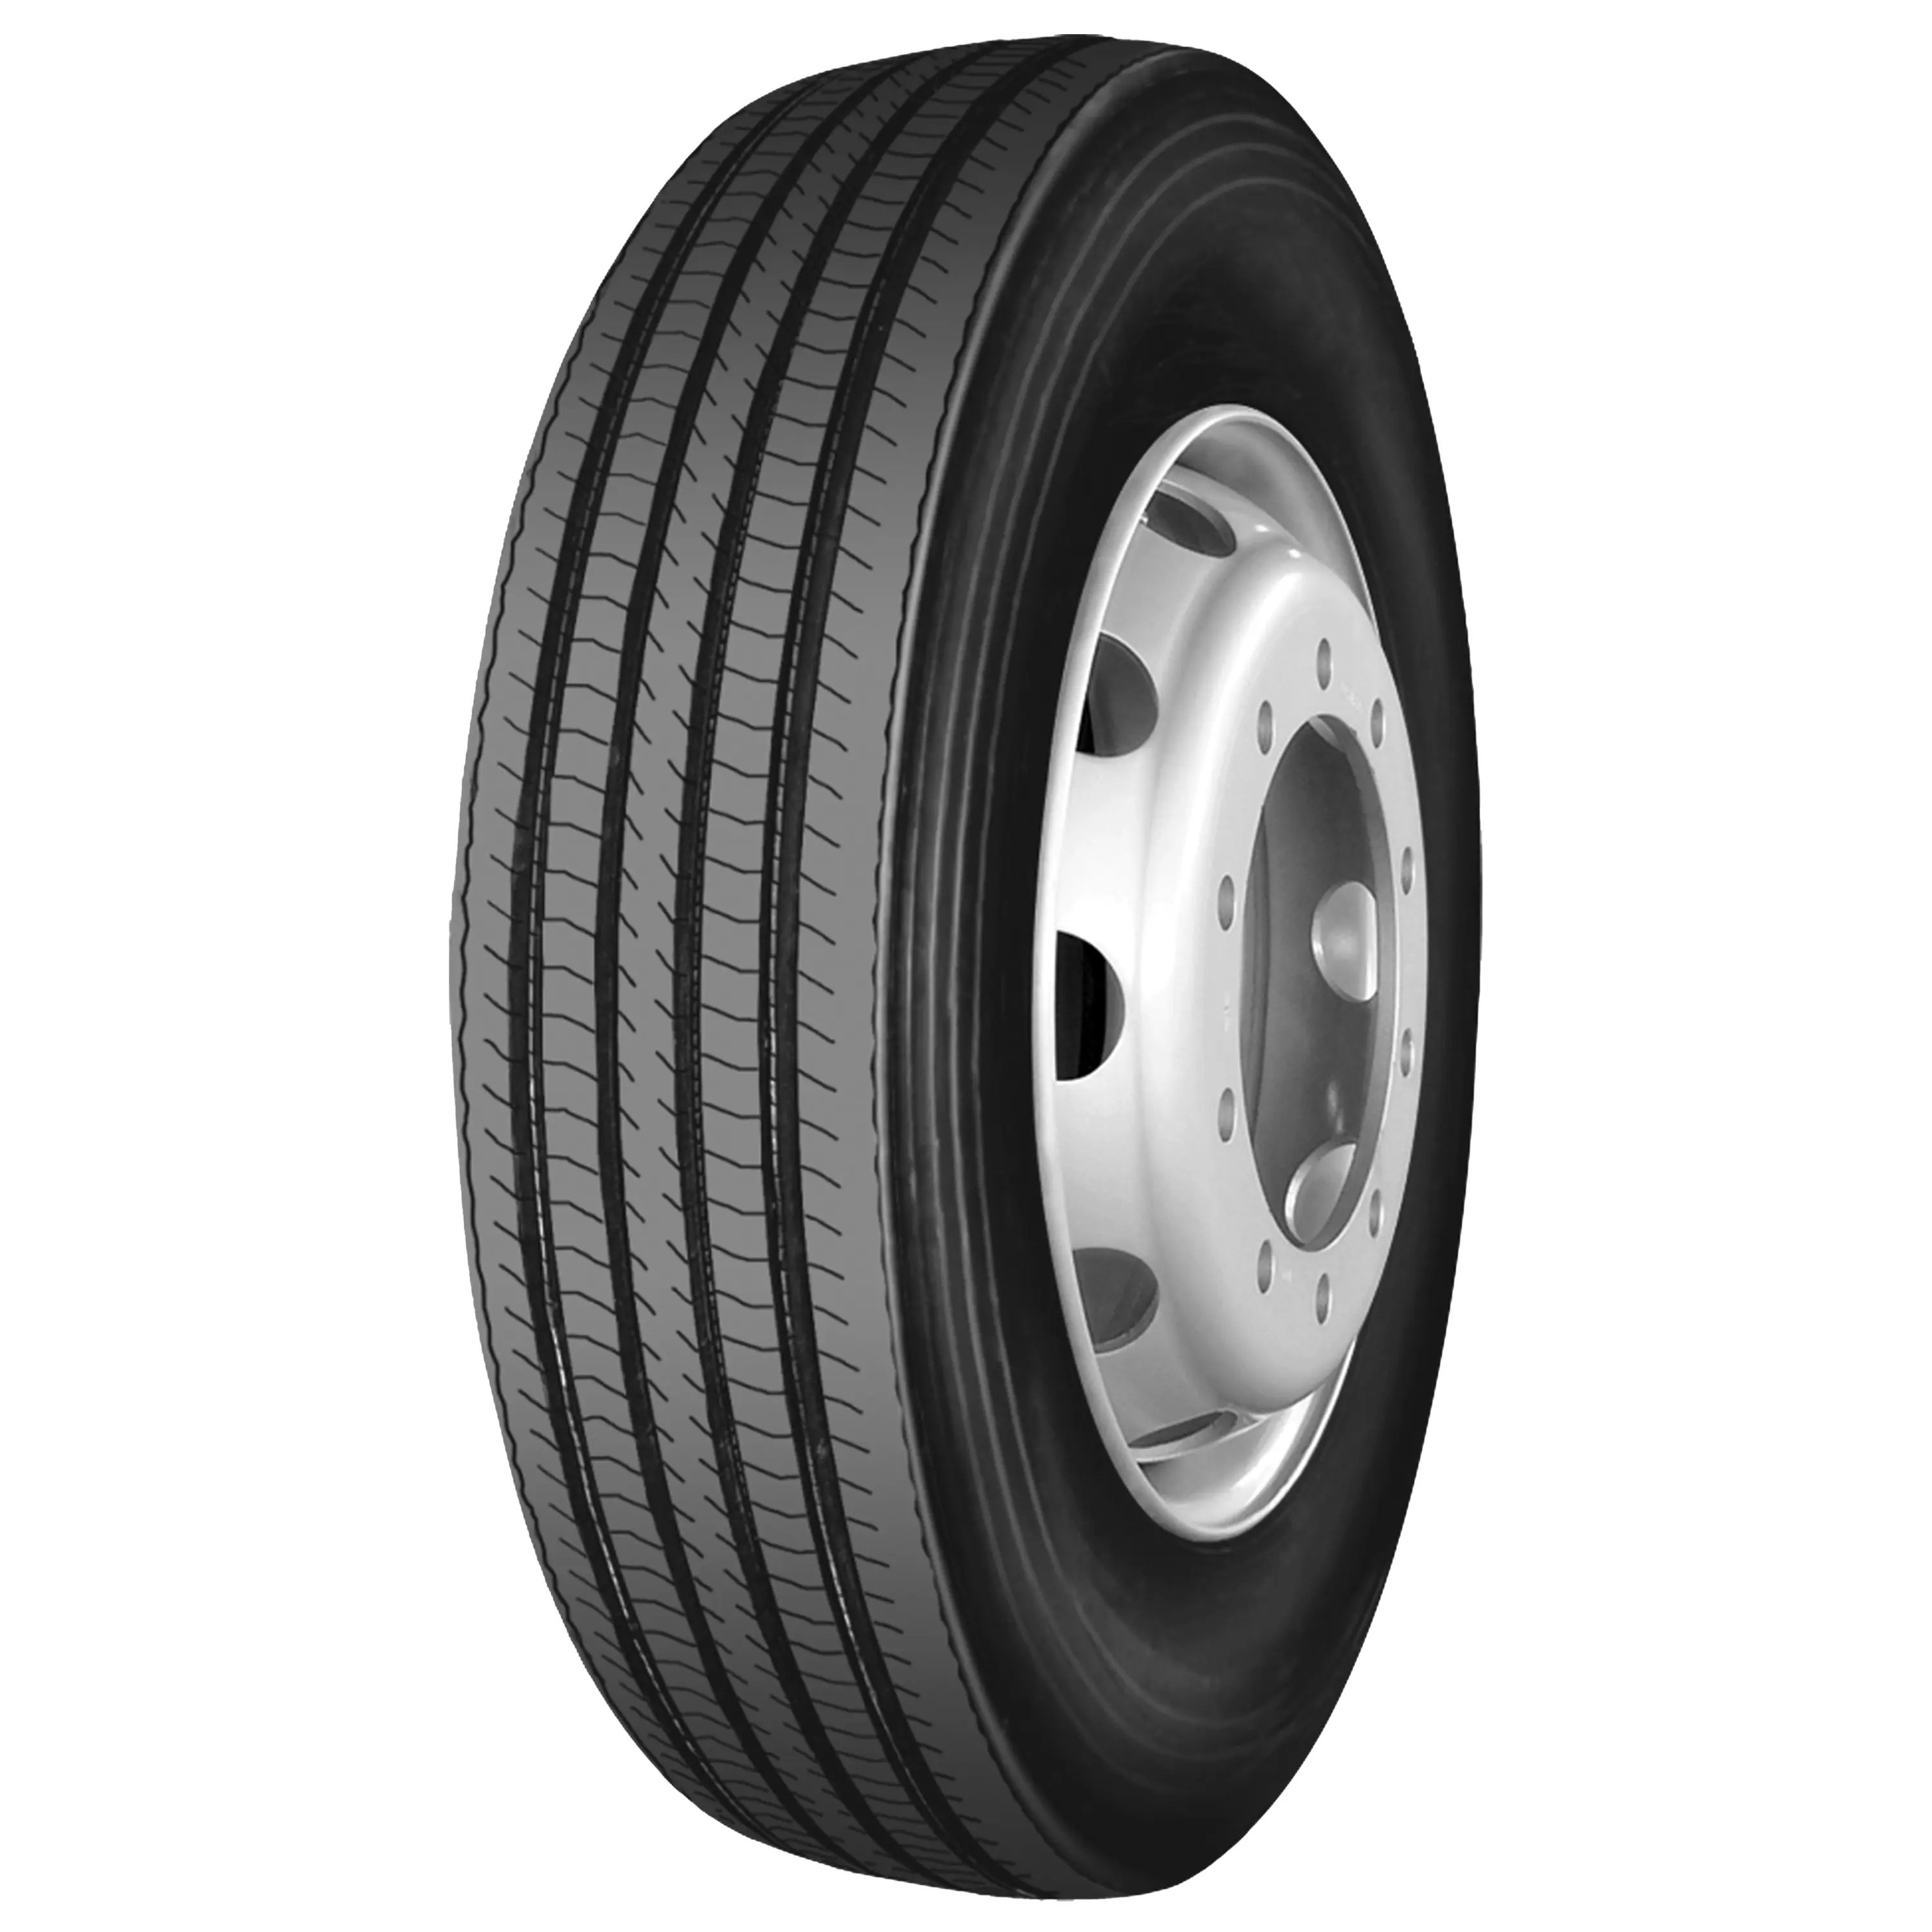 315/80R22.5 Top-Marken-Lkw-Reifen in China Preise neuer Reifenhersteller Lkw-Reifen zu verkaufen